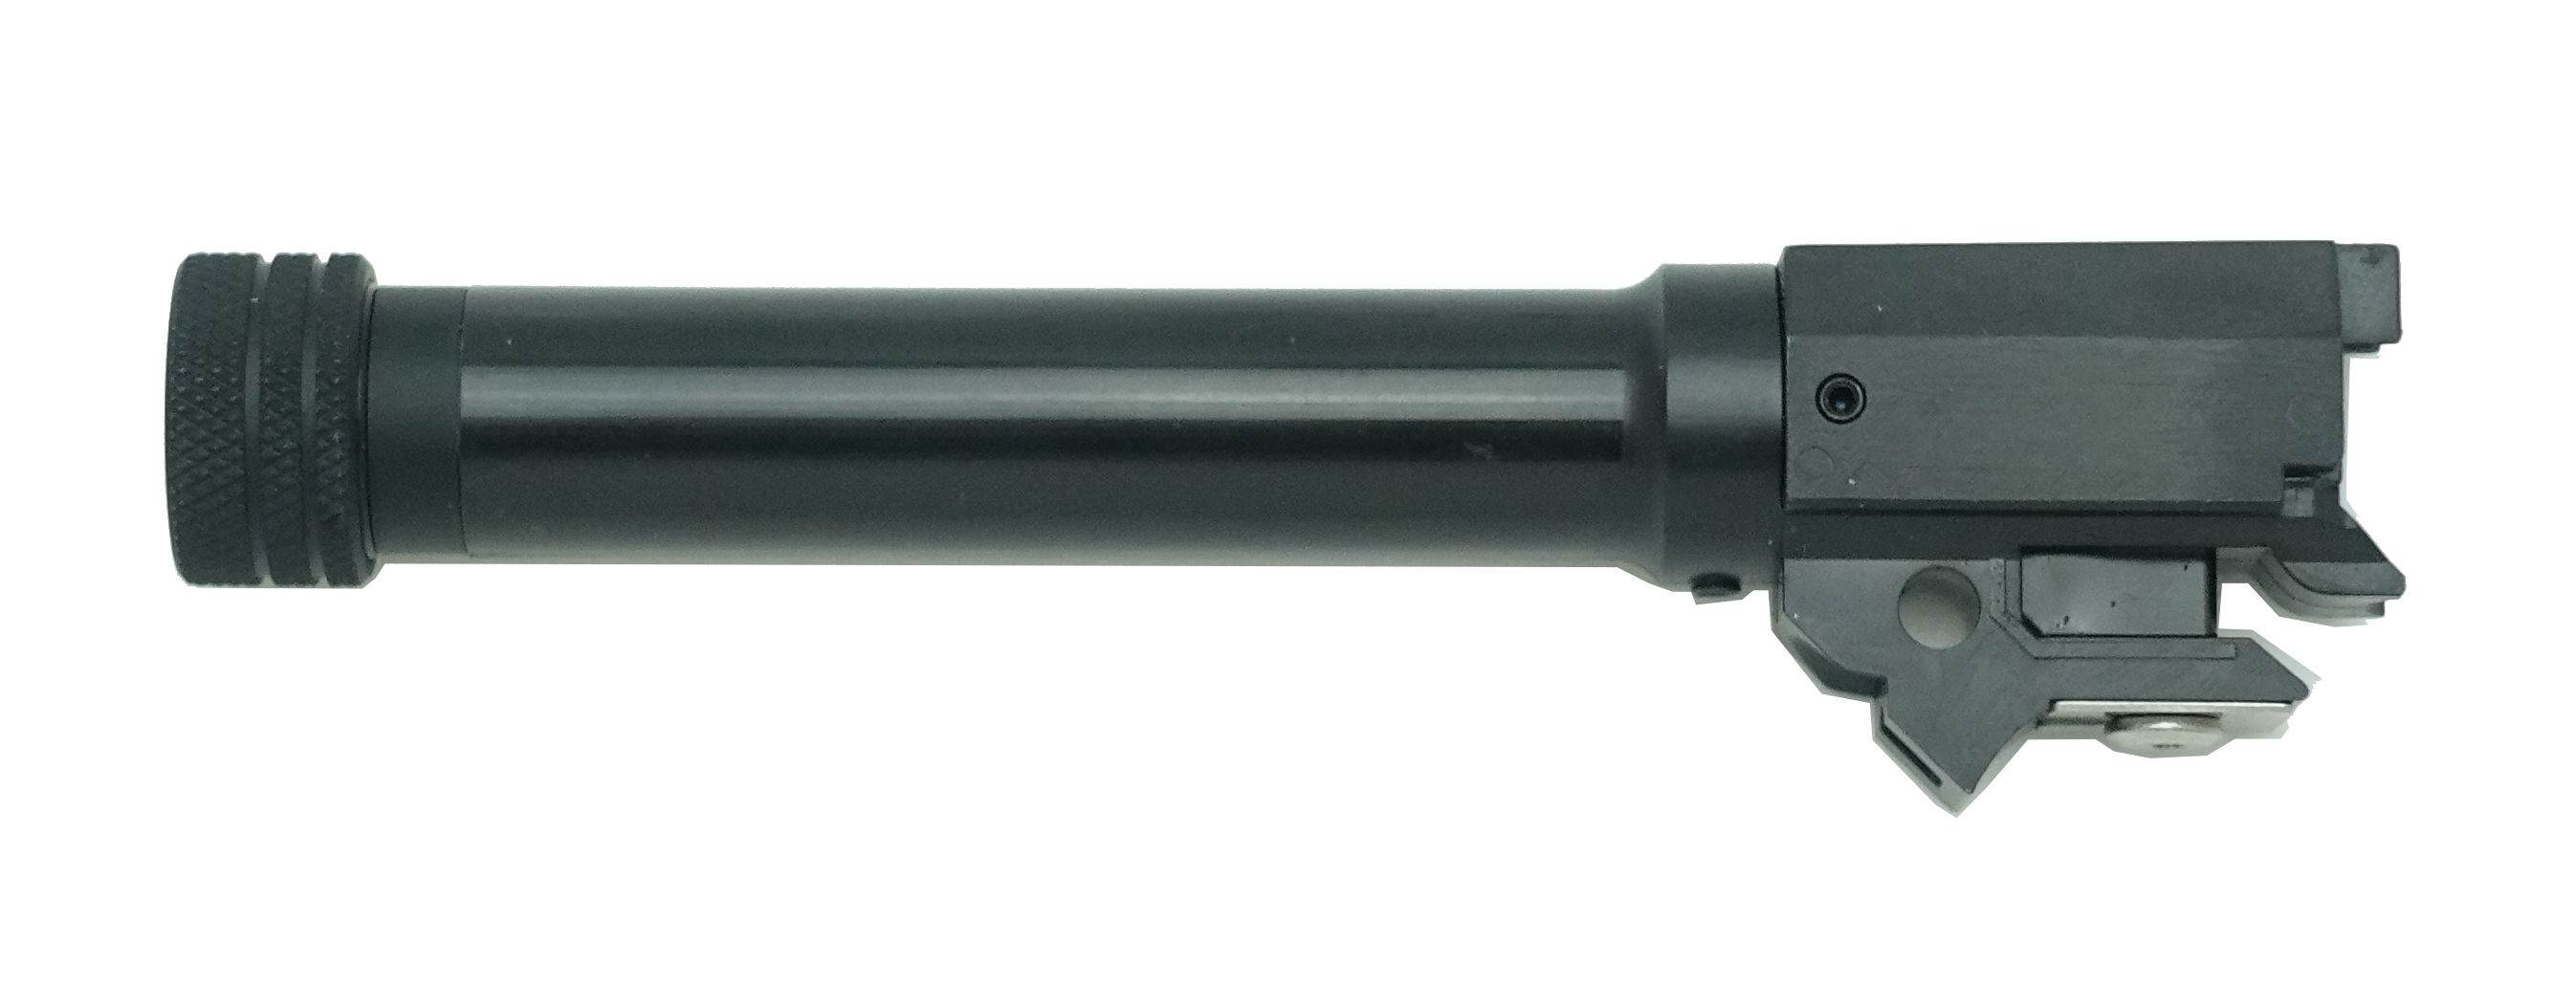 SIG P228用 スレッデッド・バレル(14mm正ネジ)